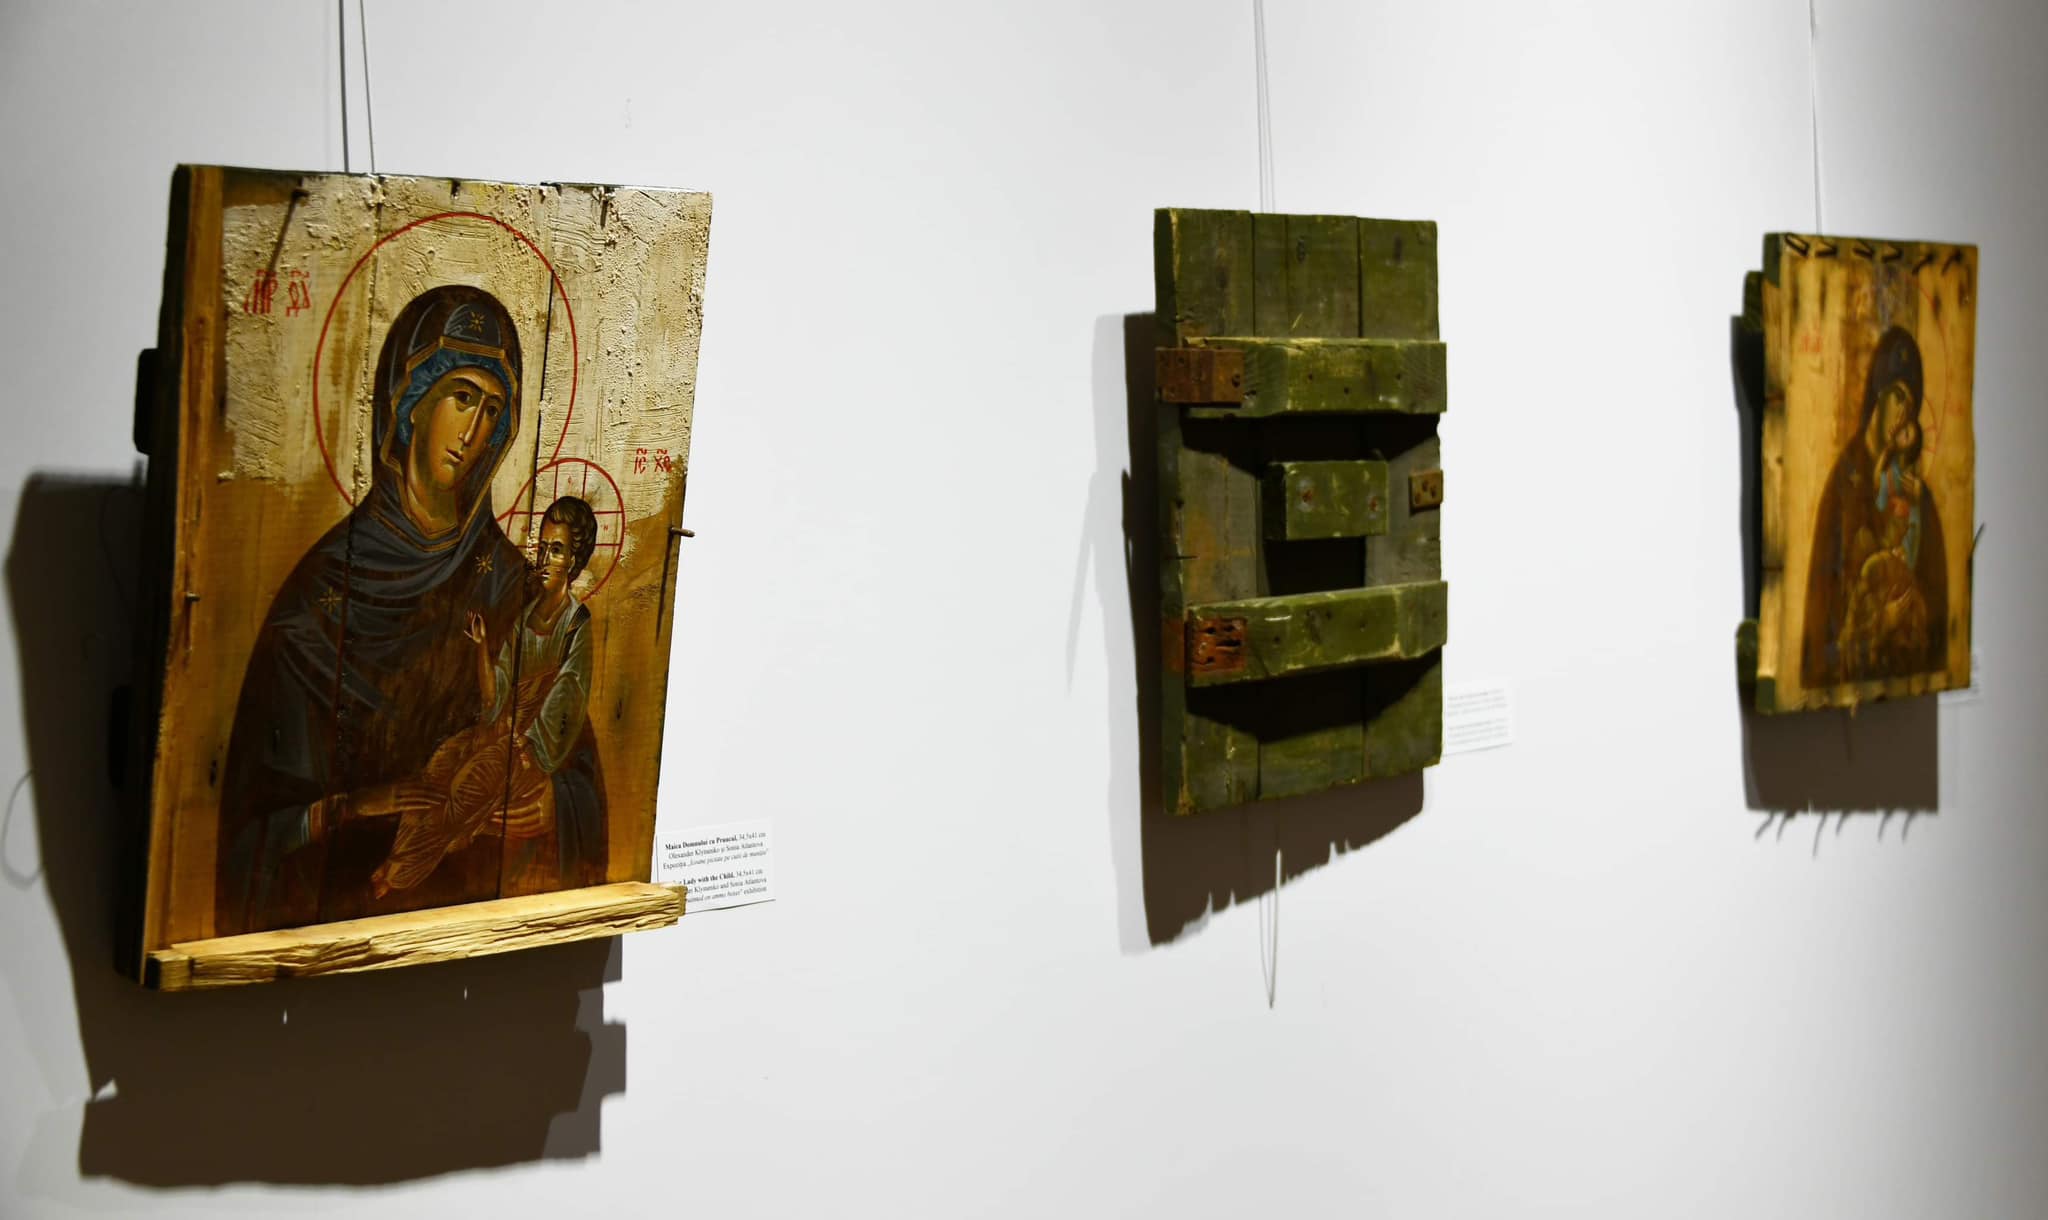 (ФОТО) В Кишиневе открылась выставка икон, написанных на ящиках для боеприпасов